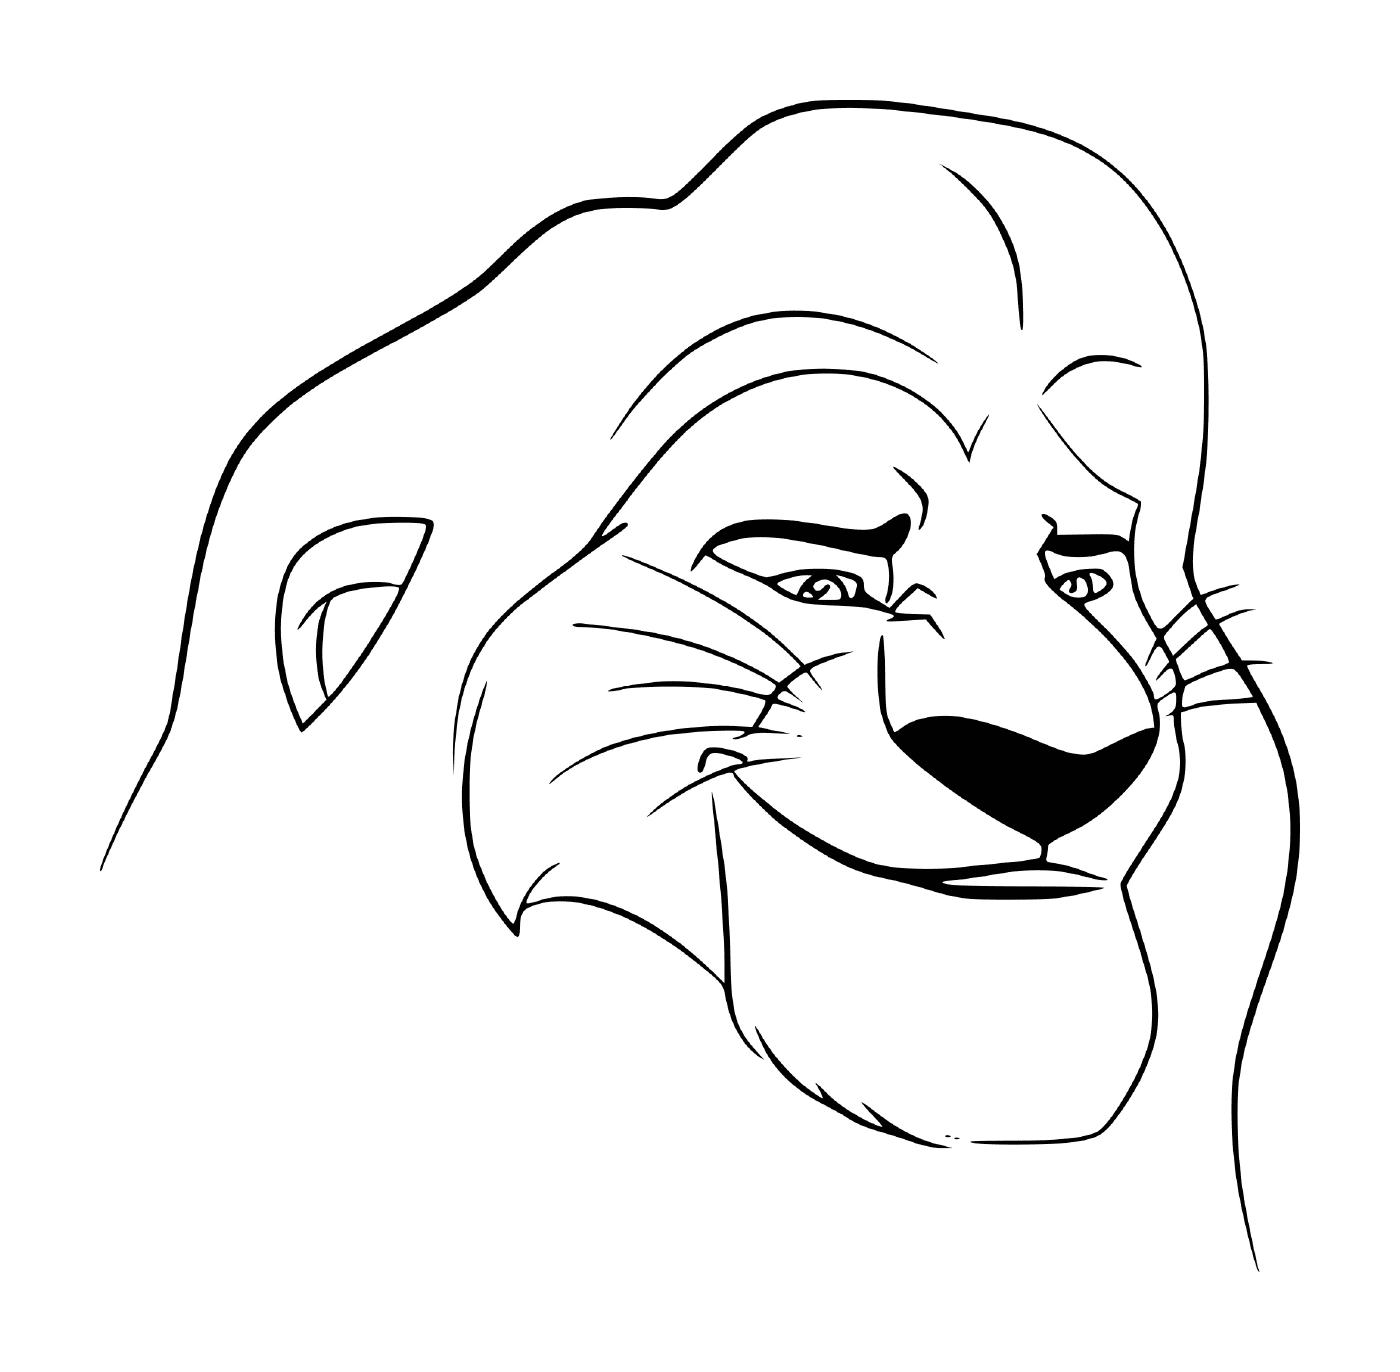  Mufasa脸的面孔,狮子王的性格 